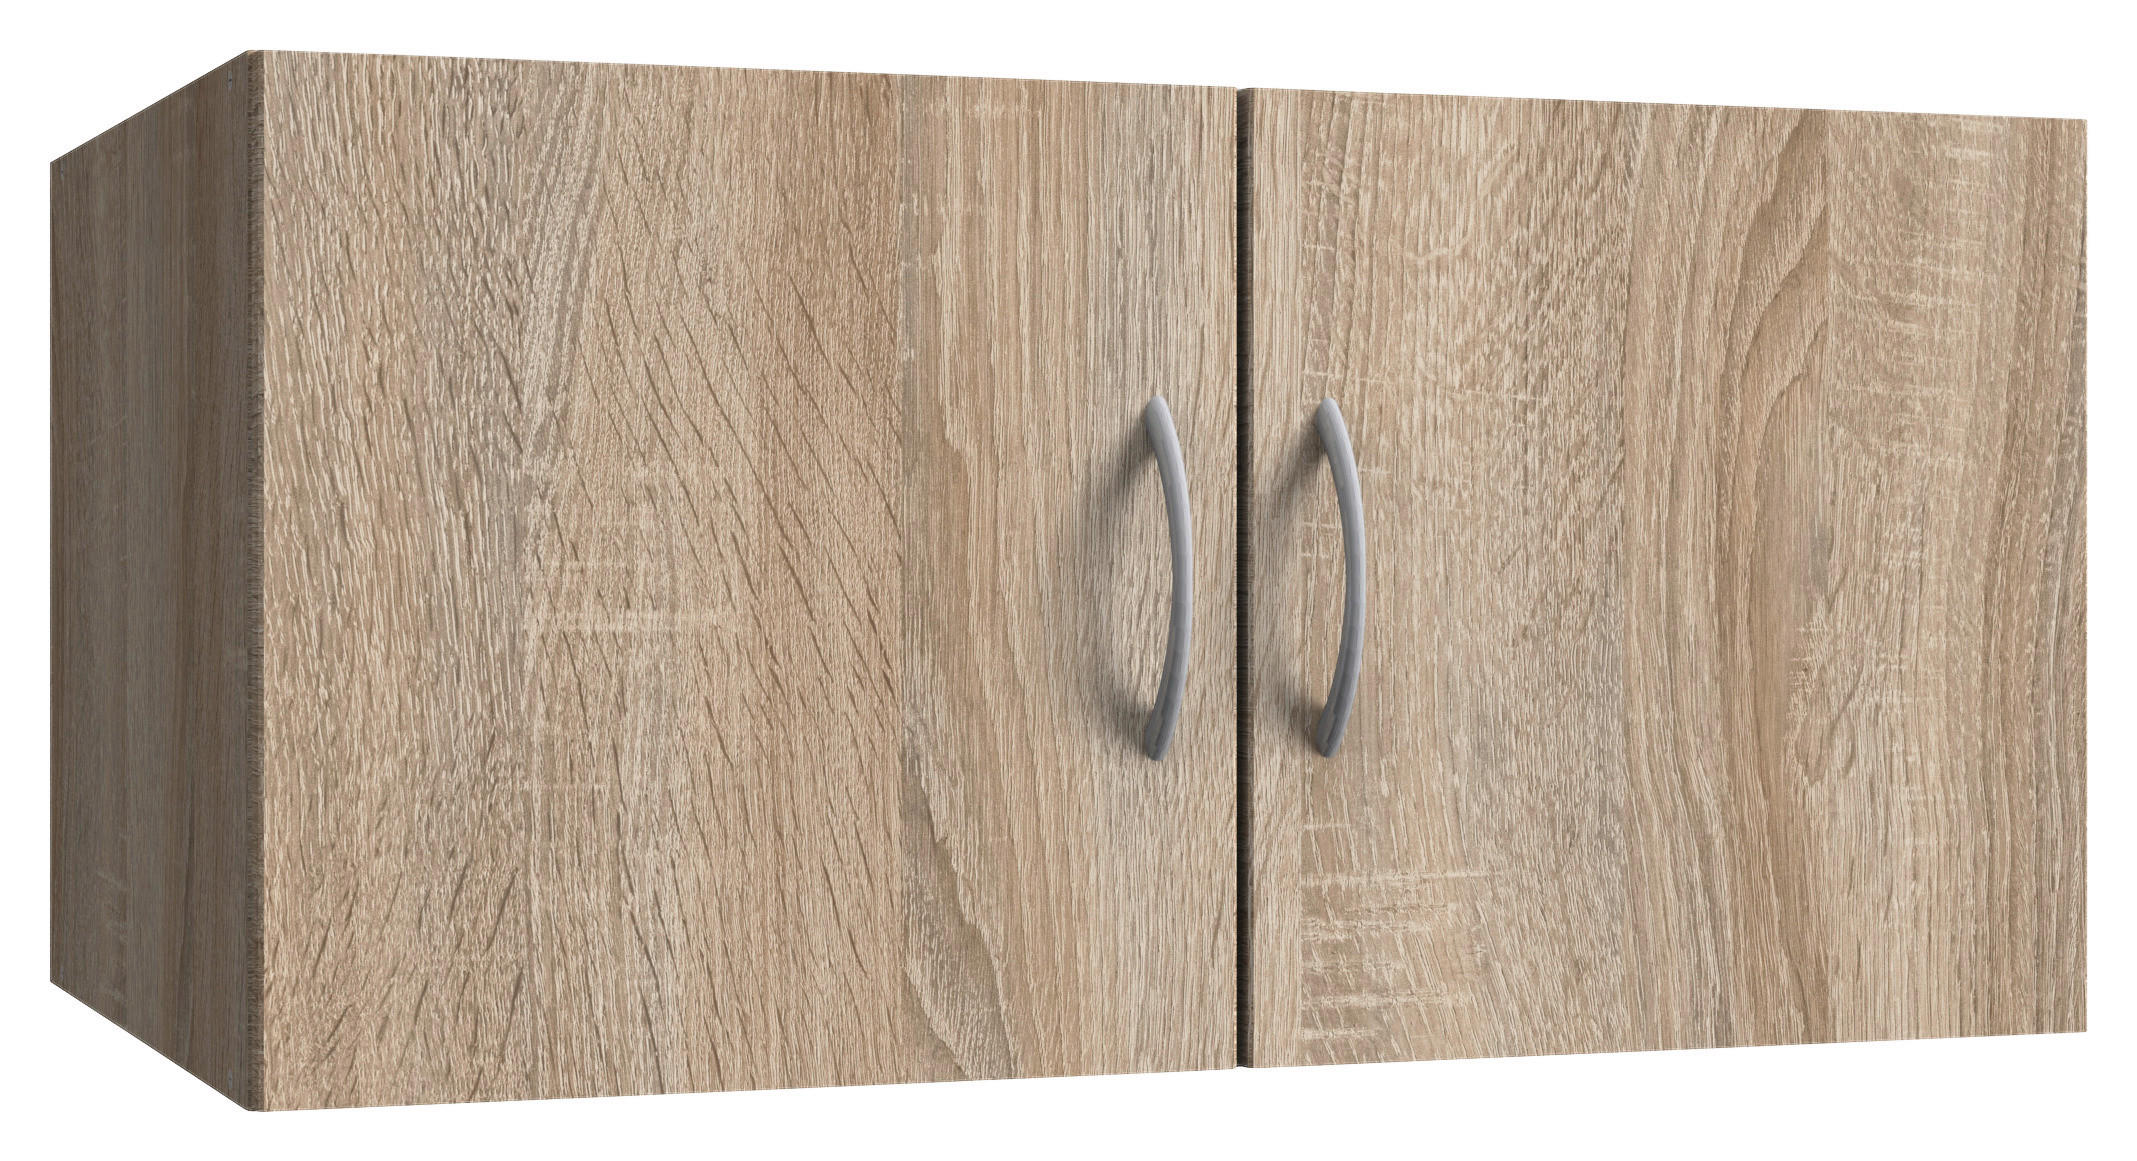 NADSTAVEC NA SKRIŇU, 70/40/40 cm - farby duba/farby hliníka, Konventionell, kompozitné drevo/plast (70/40/40cm) - Xora